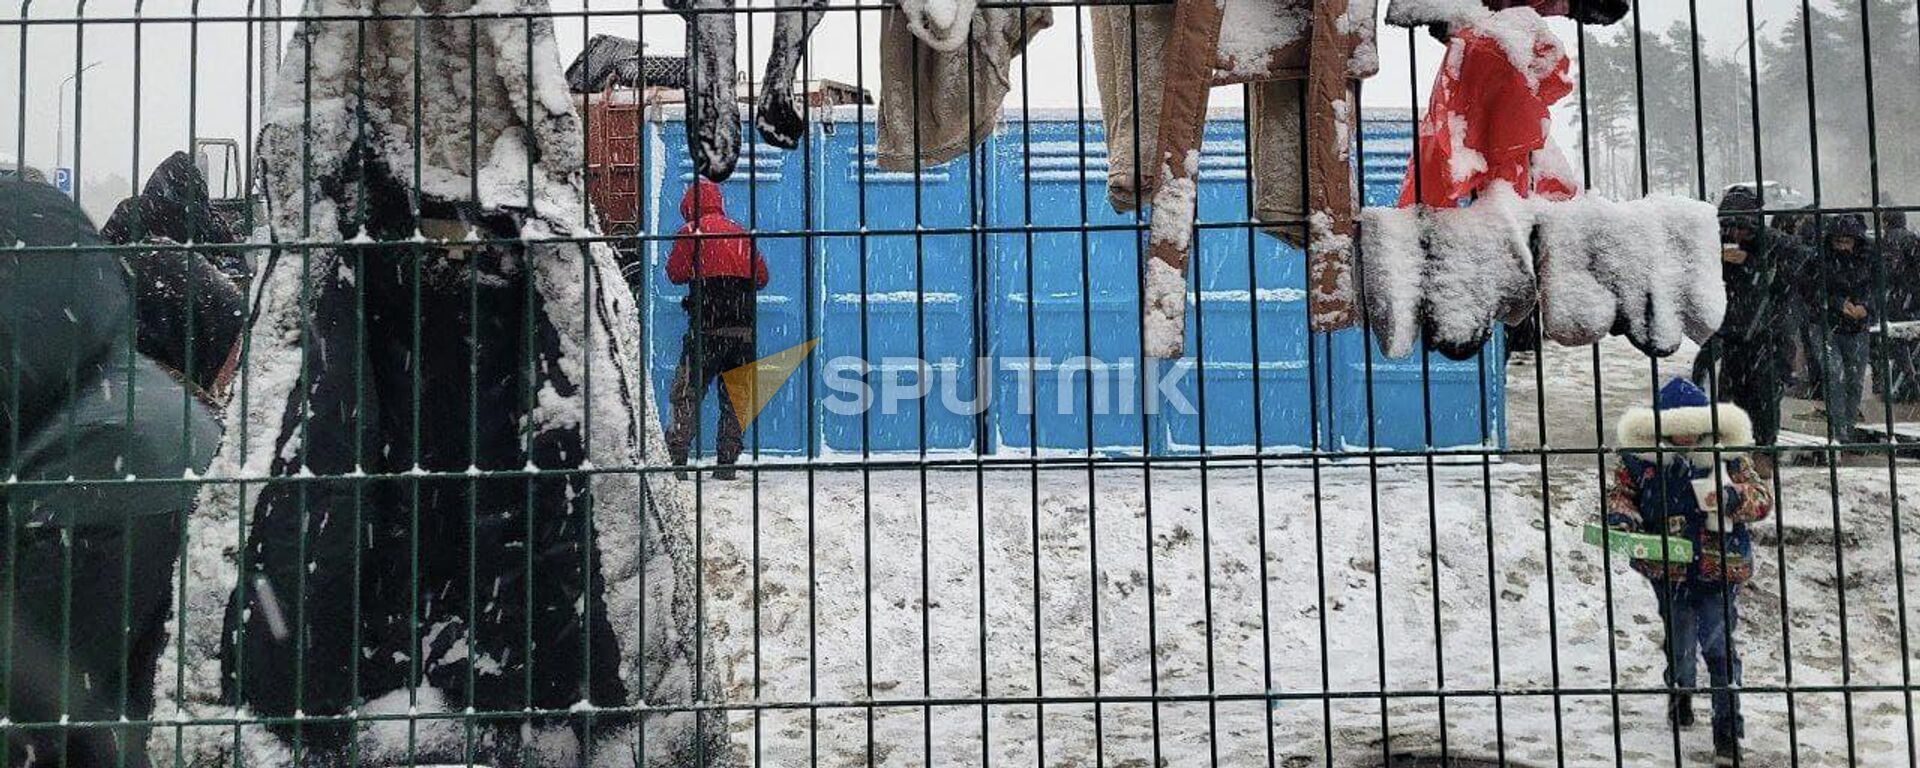 А снег не знал и падал: школа выживания в мороз для мигрантов - видео - Sputnik Беларусь, 1920, 24.11.2021